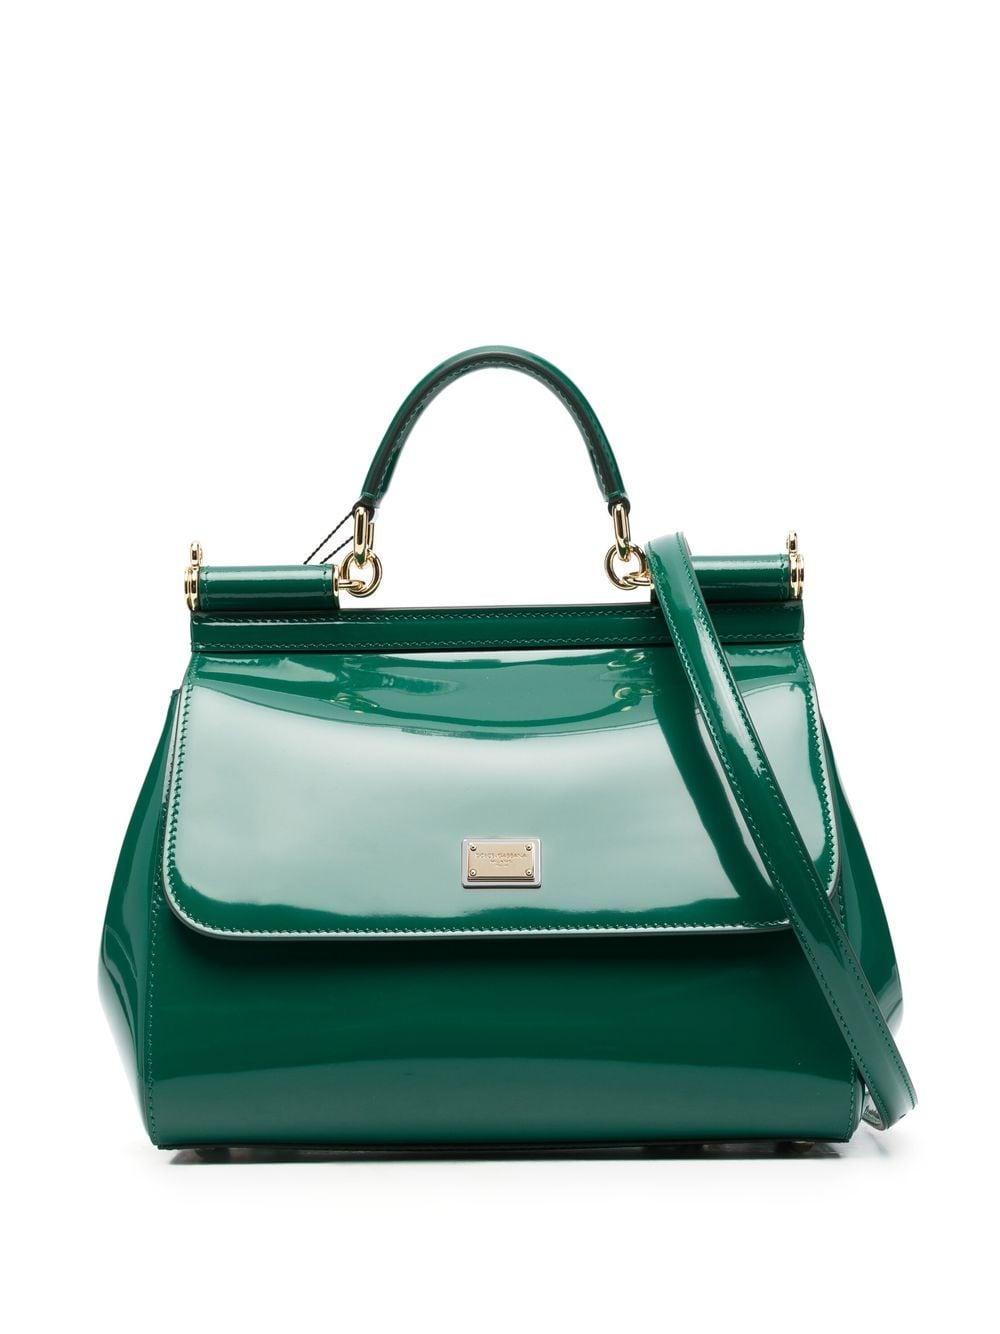 Dolce & Gabbana Sicily Shoulder Bag - Green